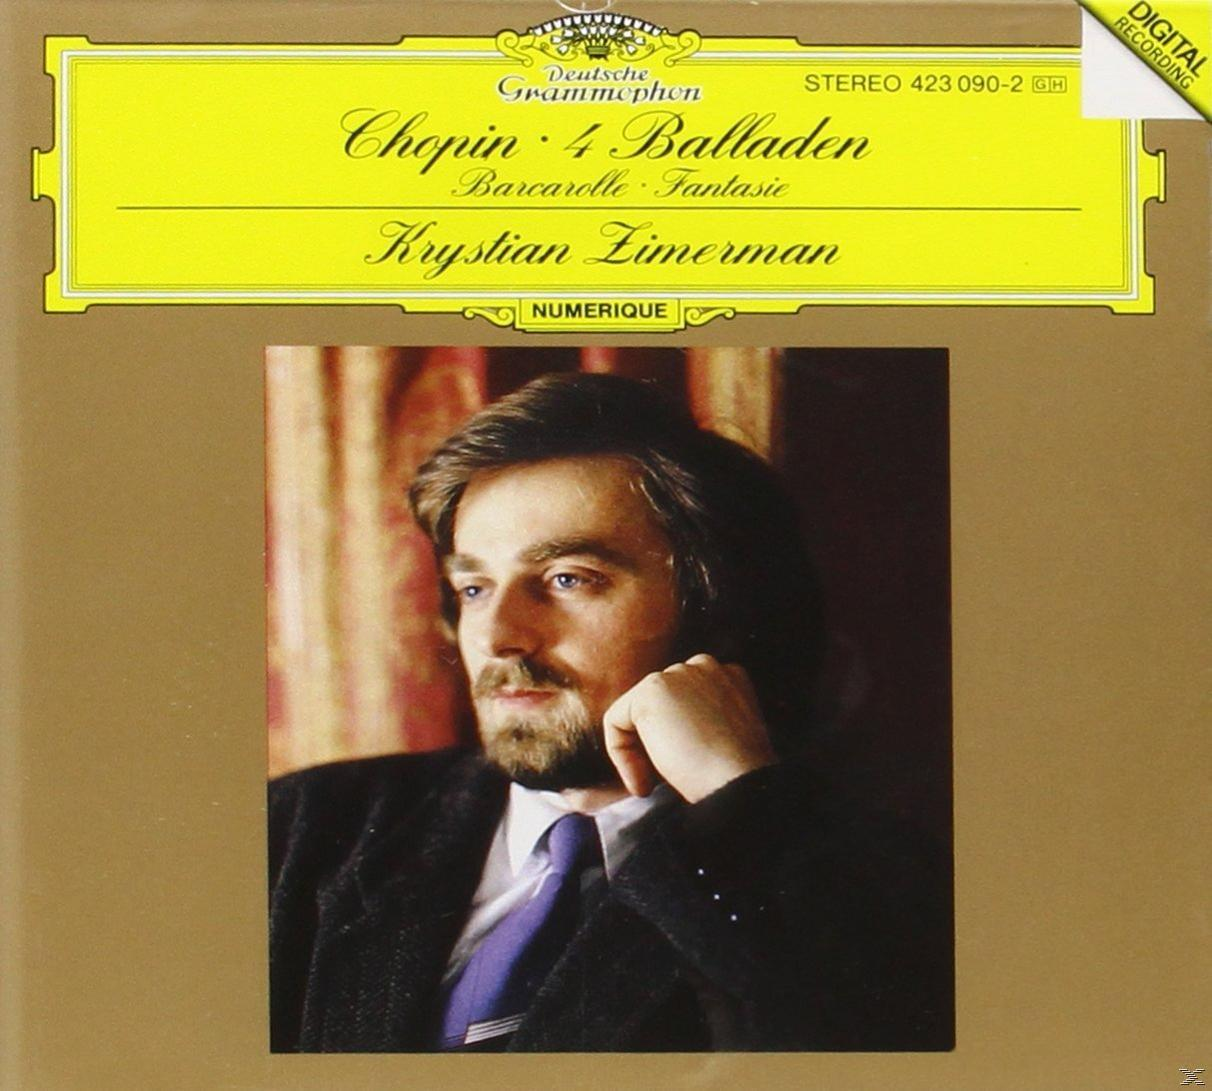 Zimerman Krystian - Ballades 1-4,Barcarolle,Fantasia - (Vinyl)